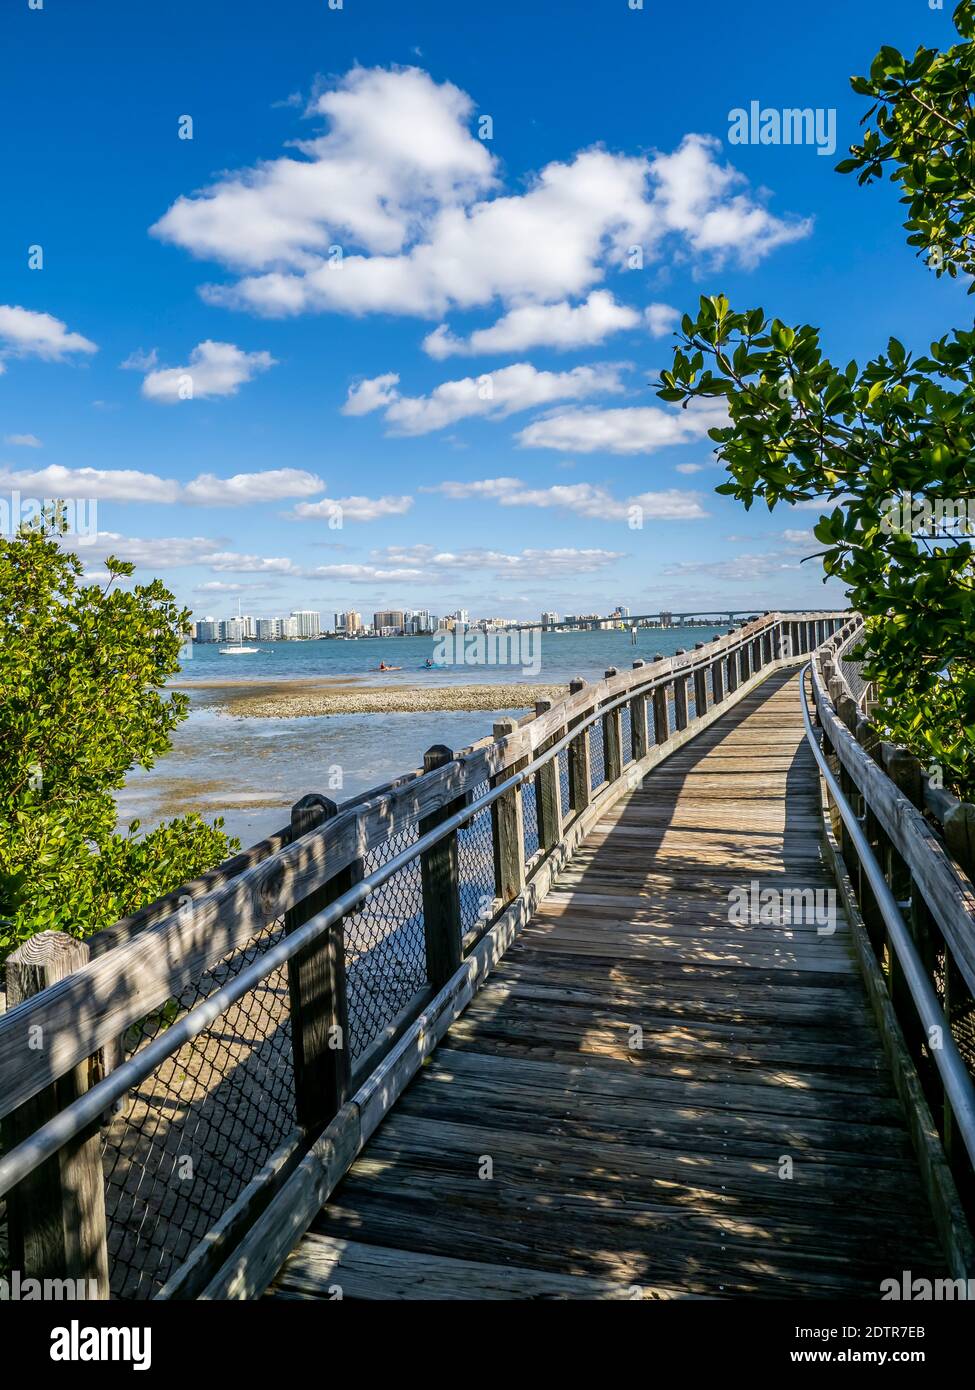 Mangrove Boardwalk sur Sarasota Bay dans Ken Thompson Park on Clé du Lido à Sarasota Floride Etats-Unis Banque D'Images